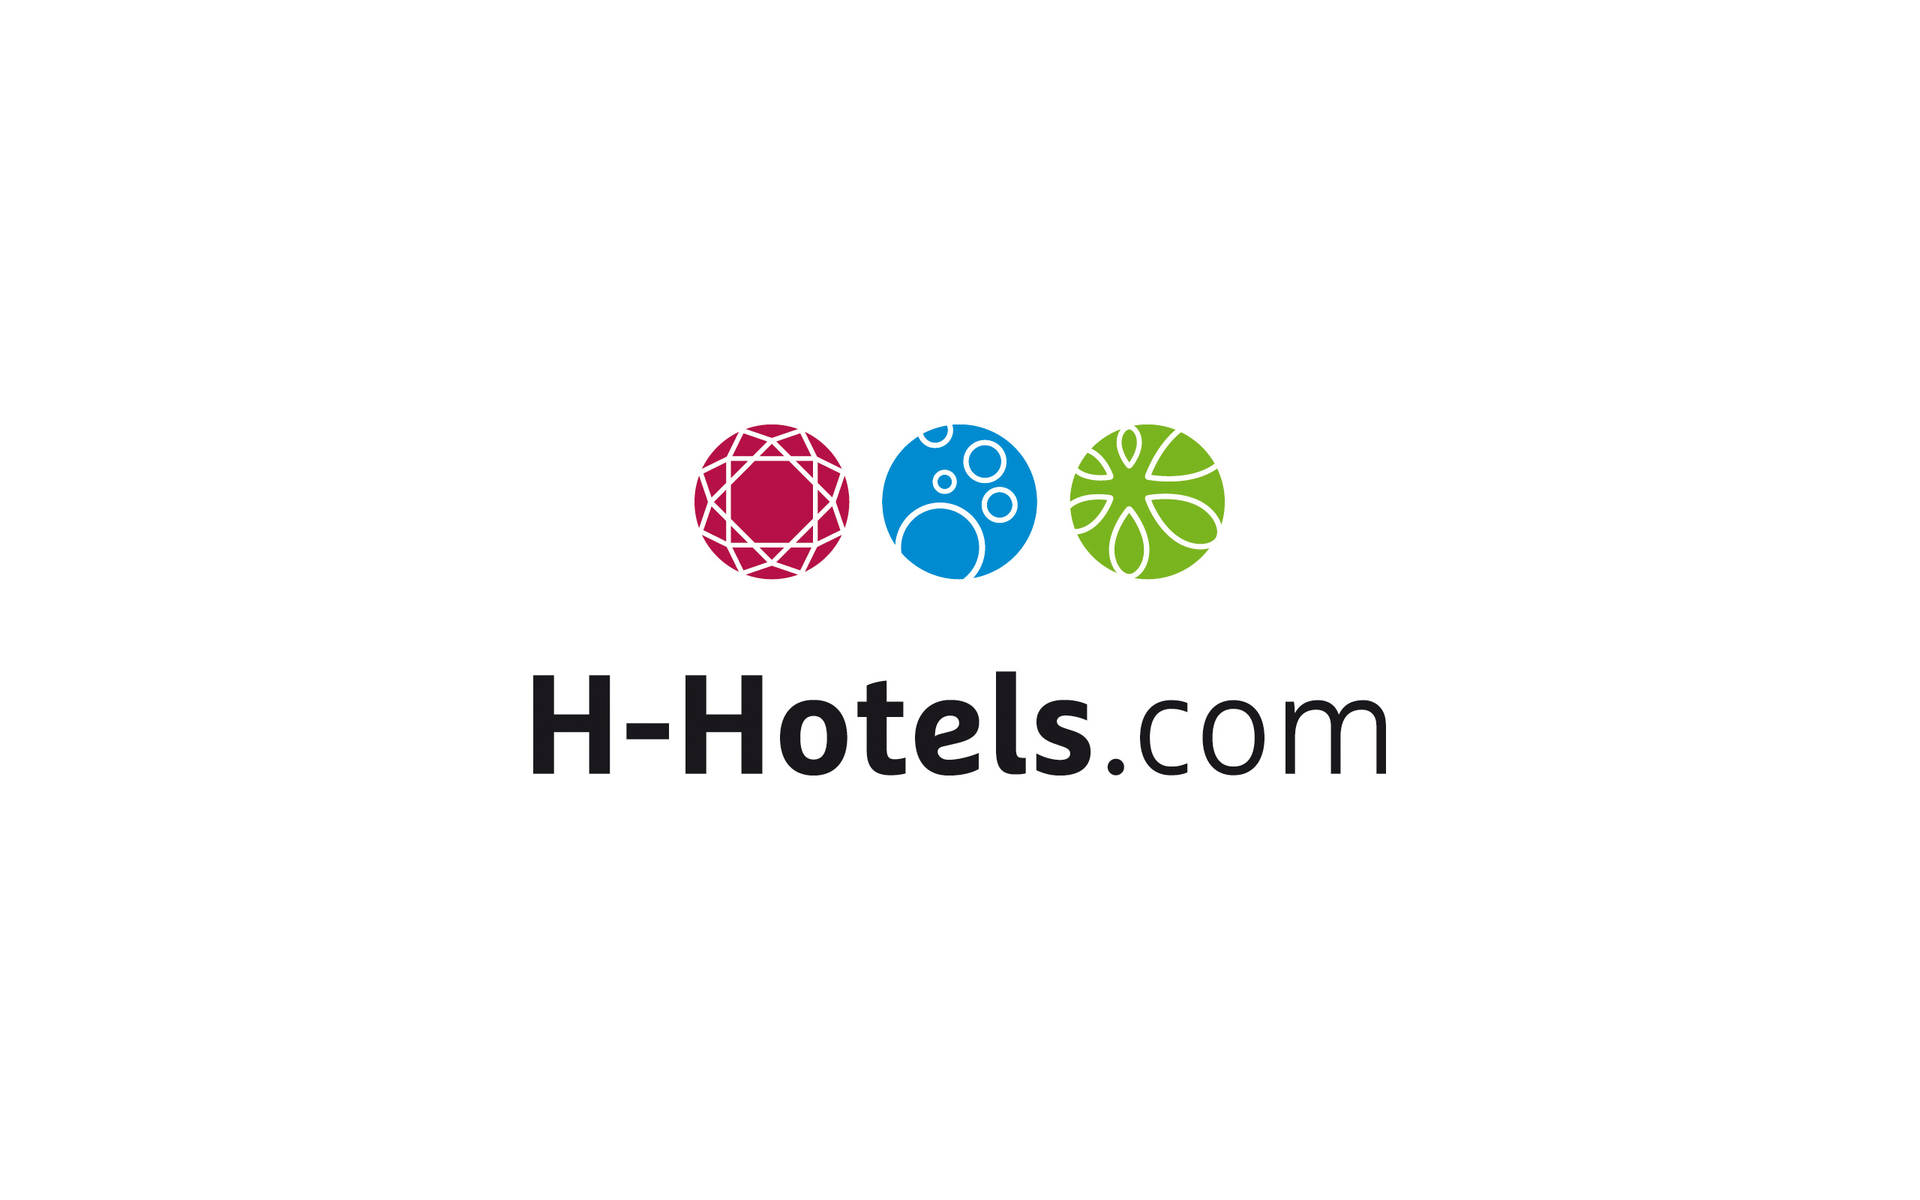 H-Hotels.com expandiert im Rhein-Main-Gebiet